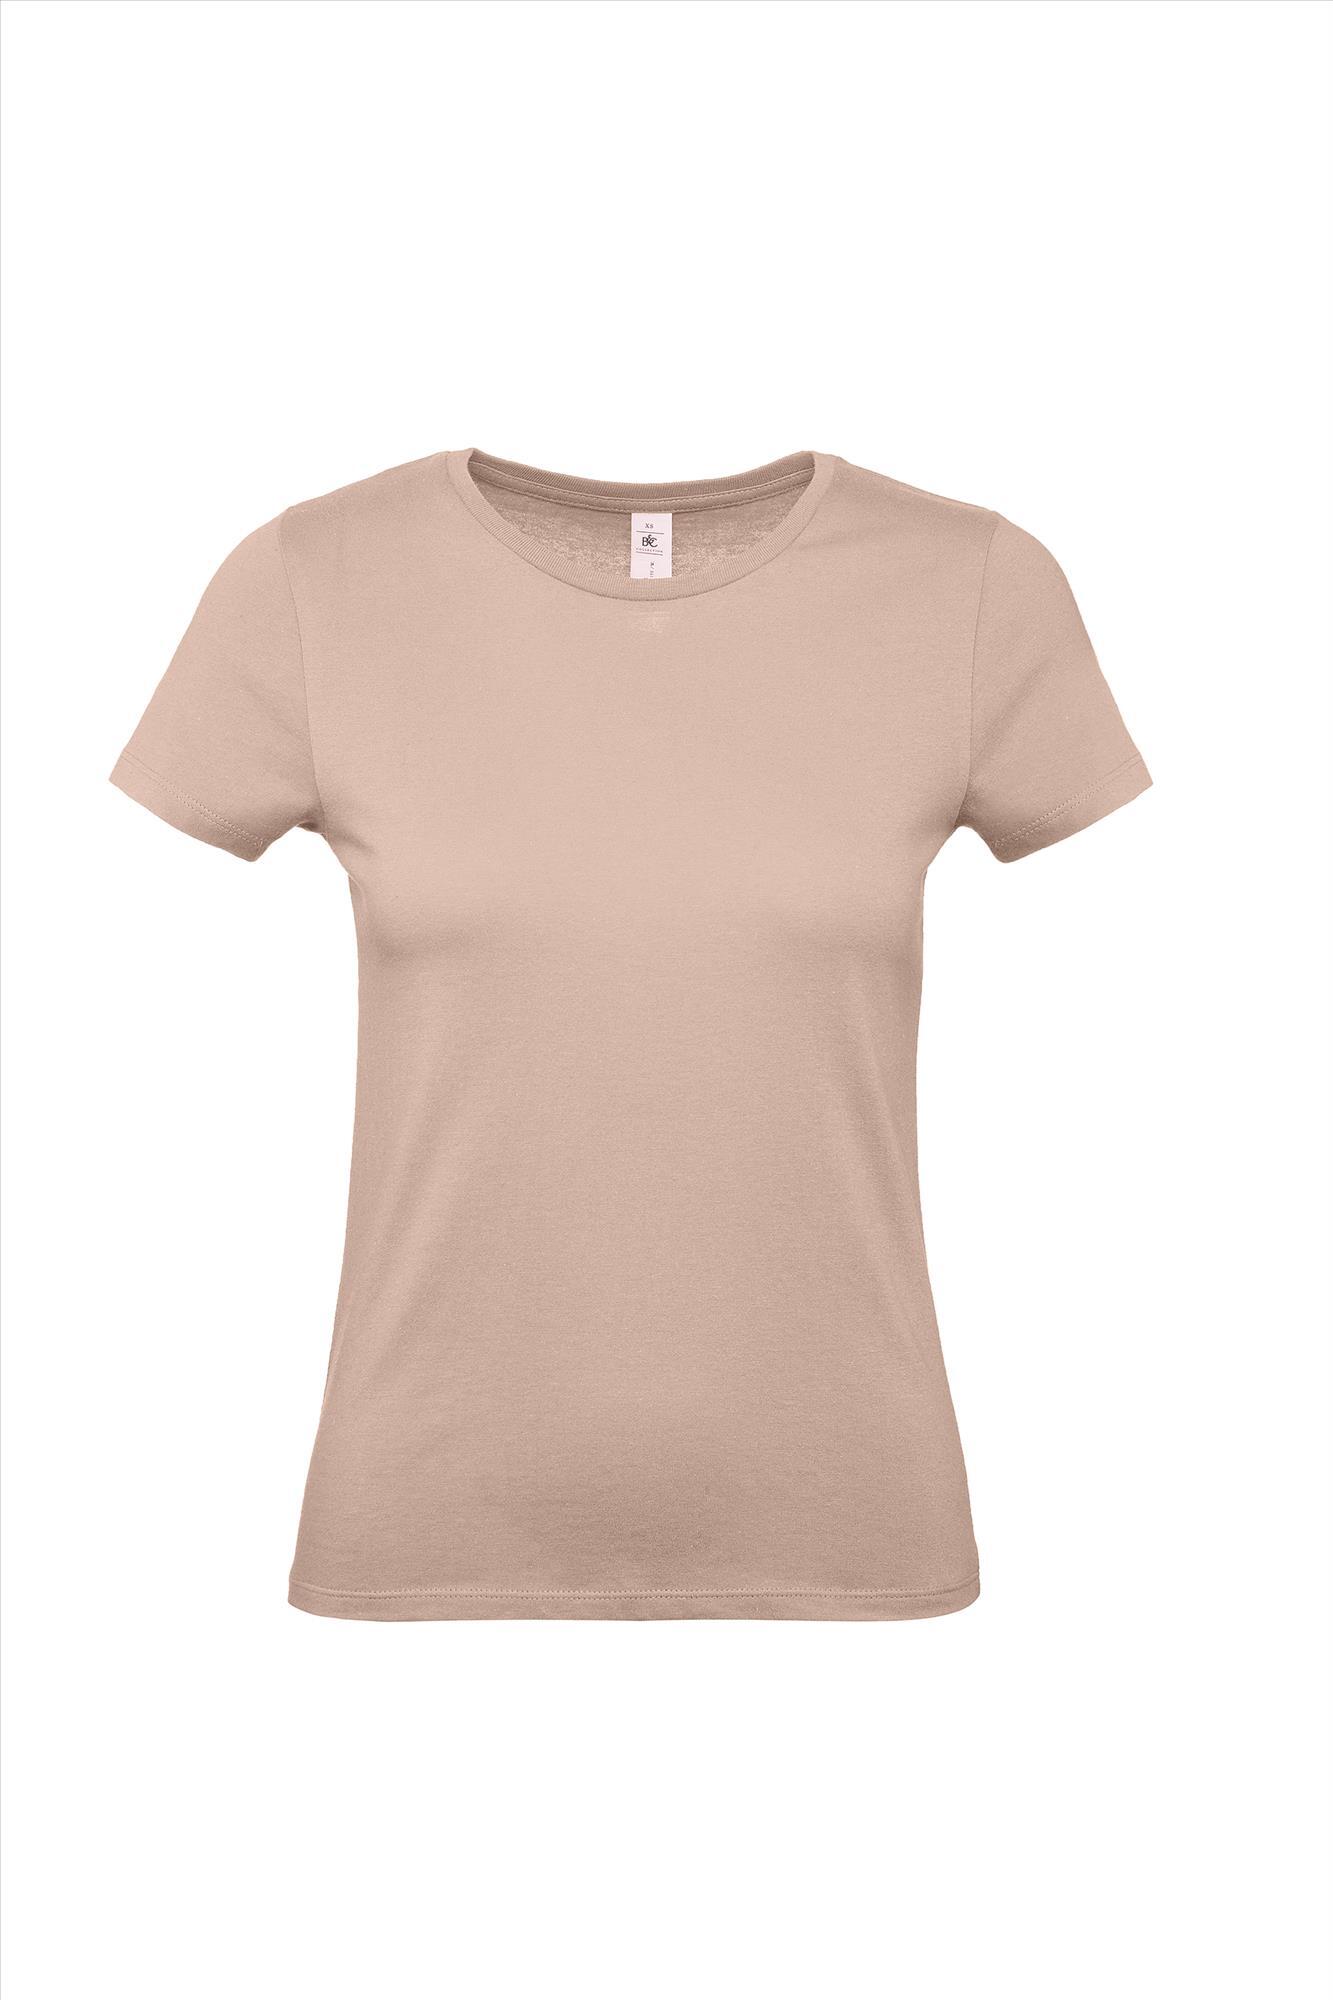 Modern T-shirt voor haar dames shirt millennial pink